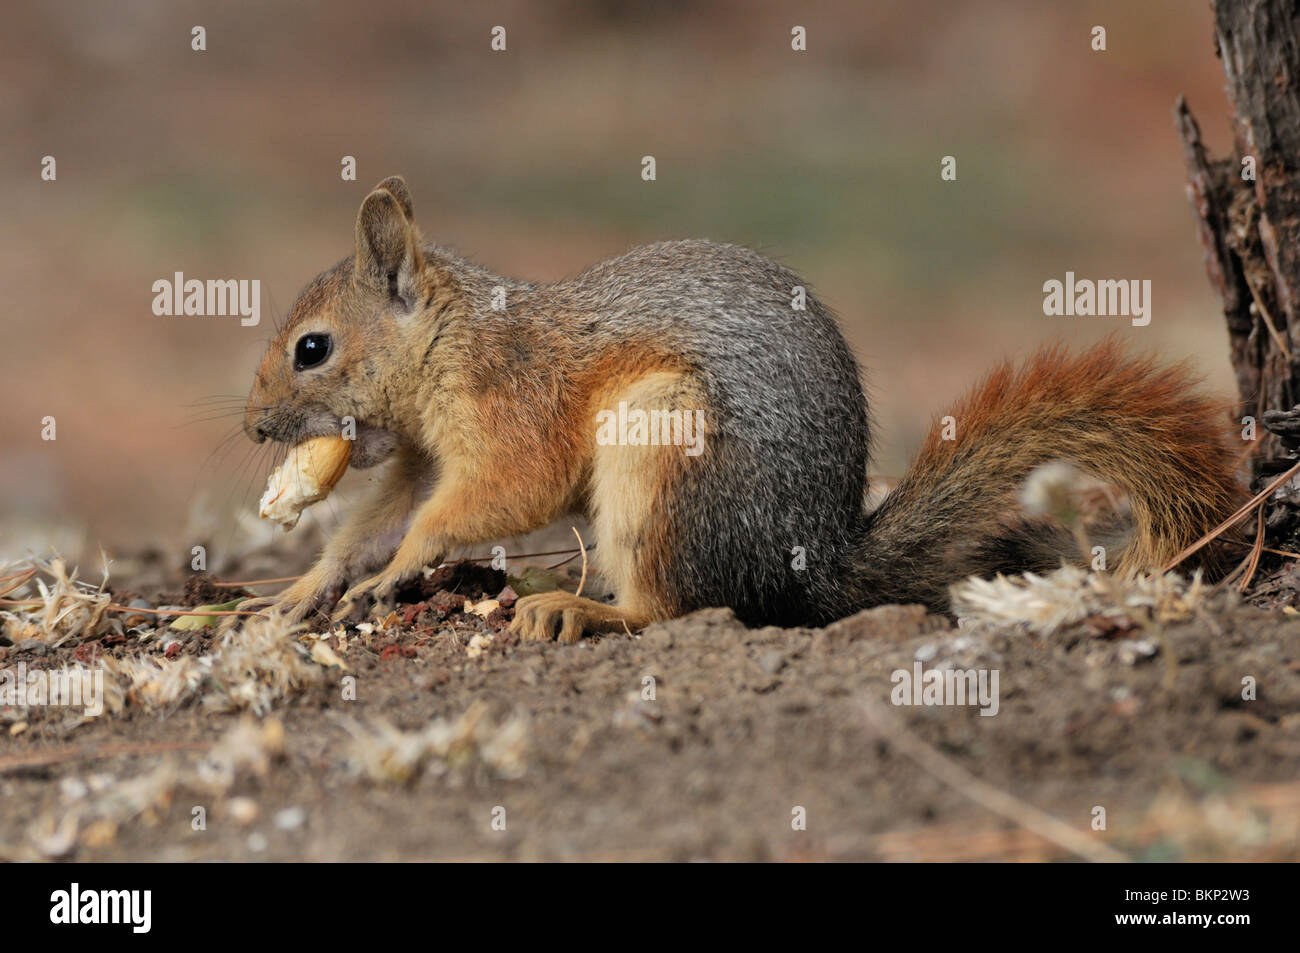 kaukasuseekhoorn begraaft een eikel in de grond; persian squirrel burying  an acorn Stock Photo